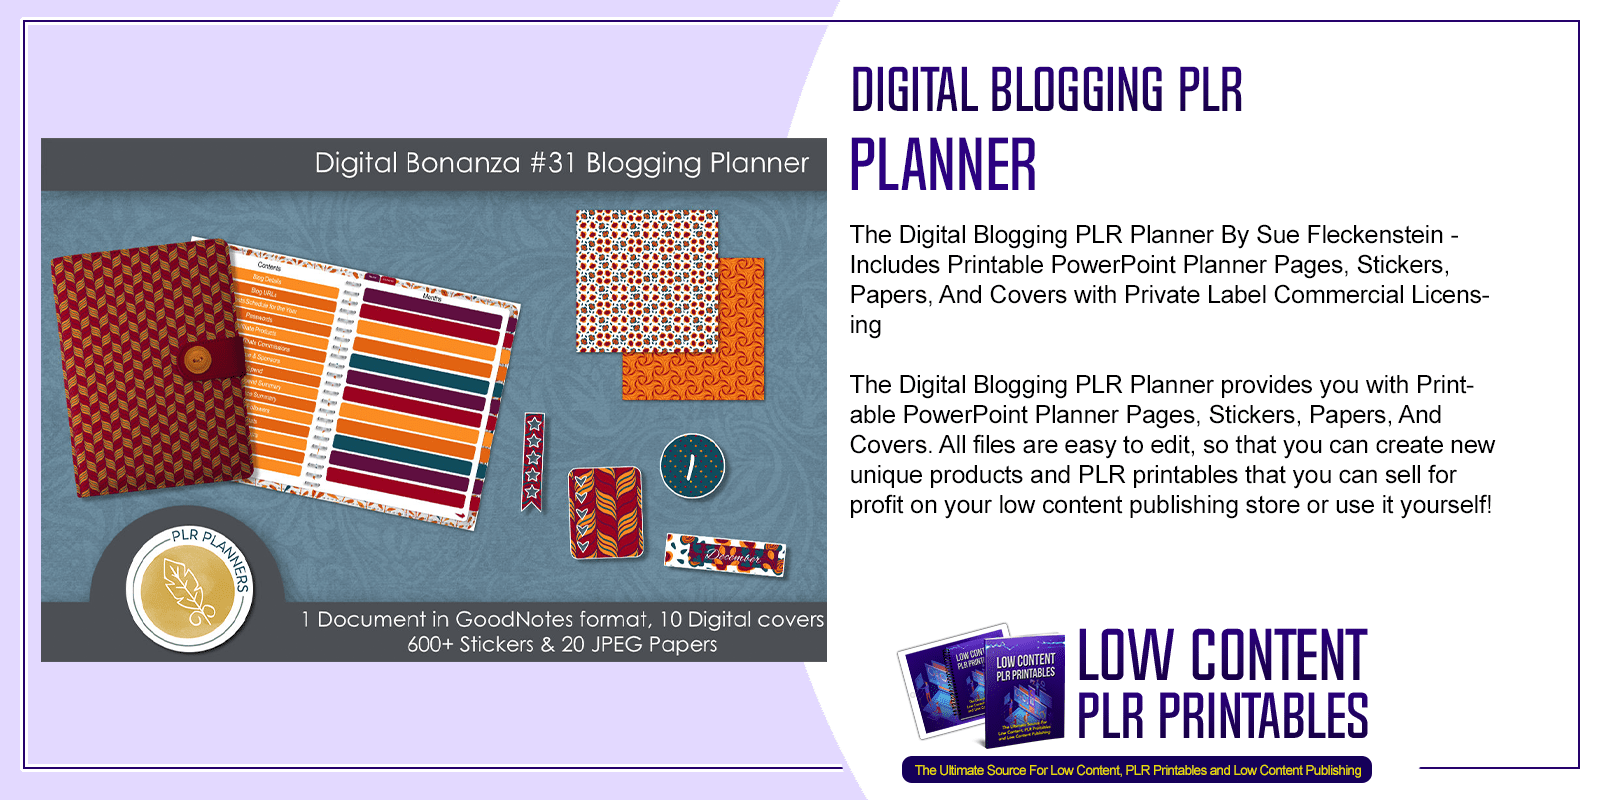 Digital Blogging PLR Planner